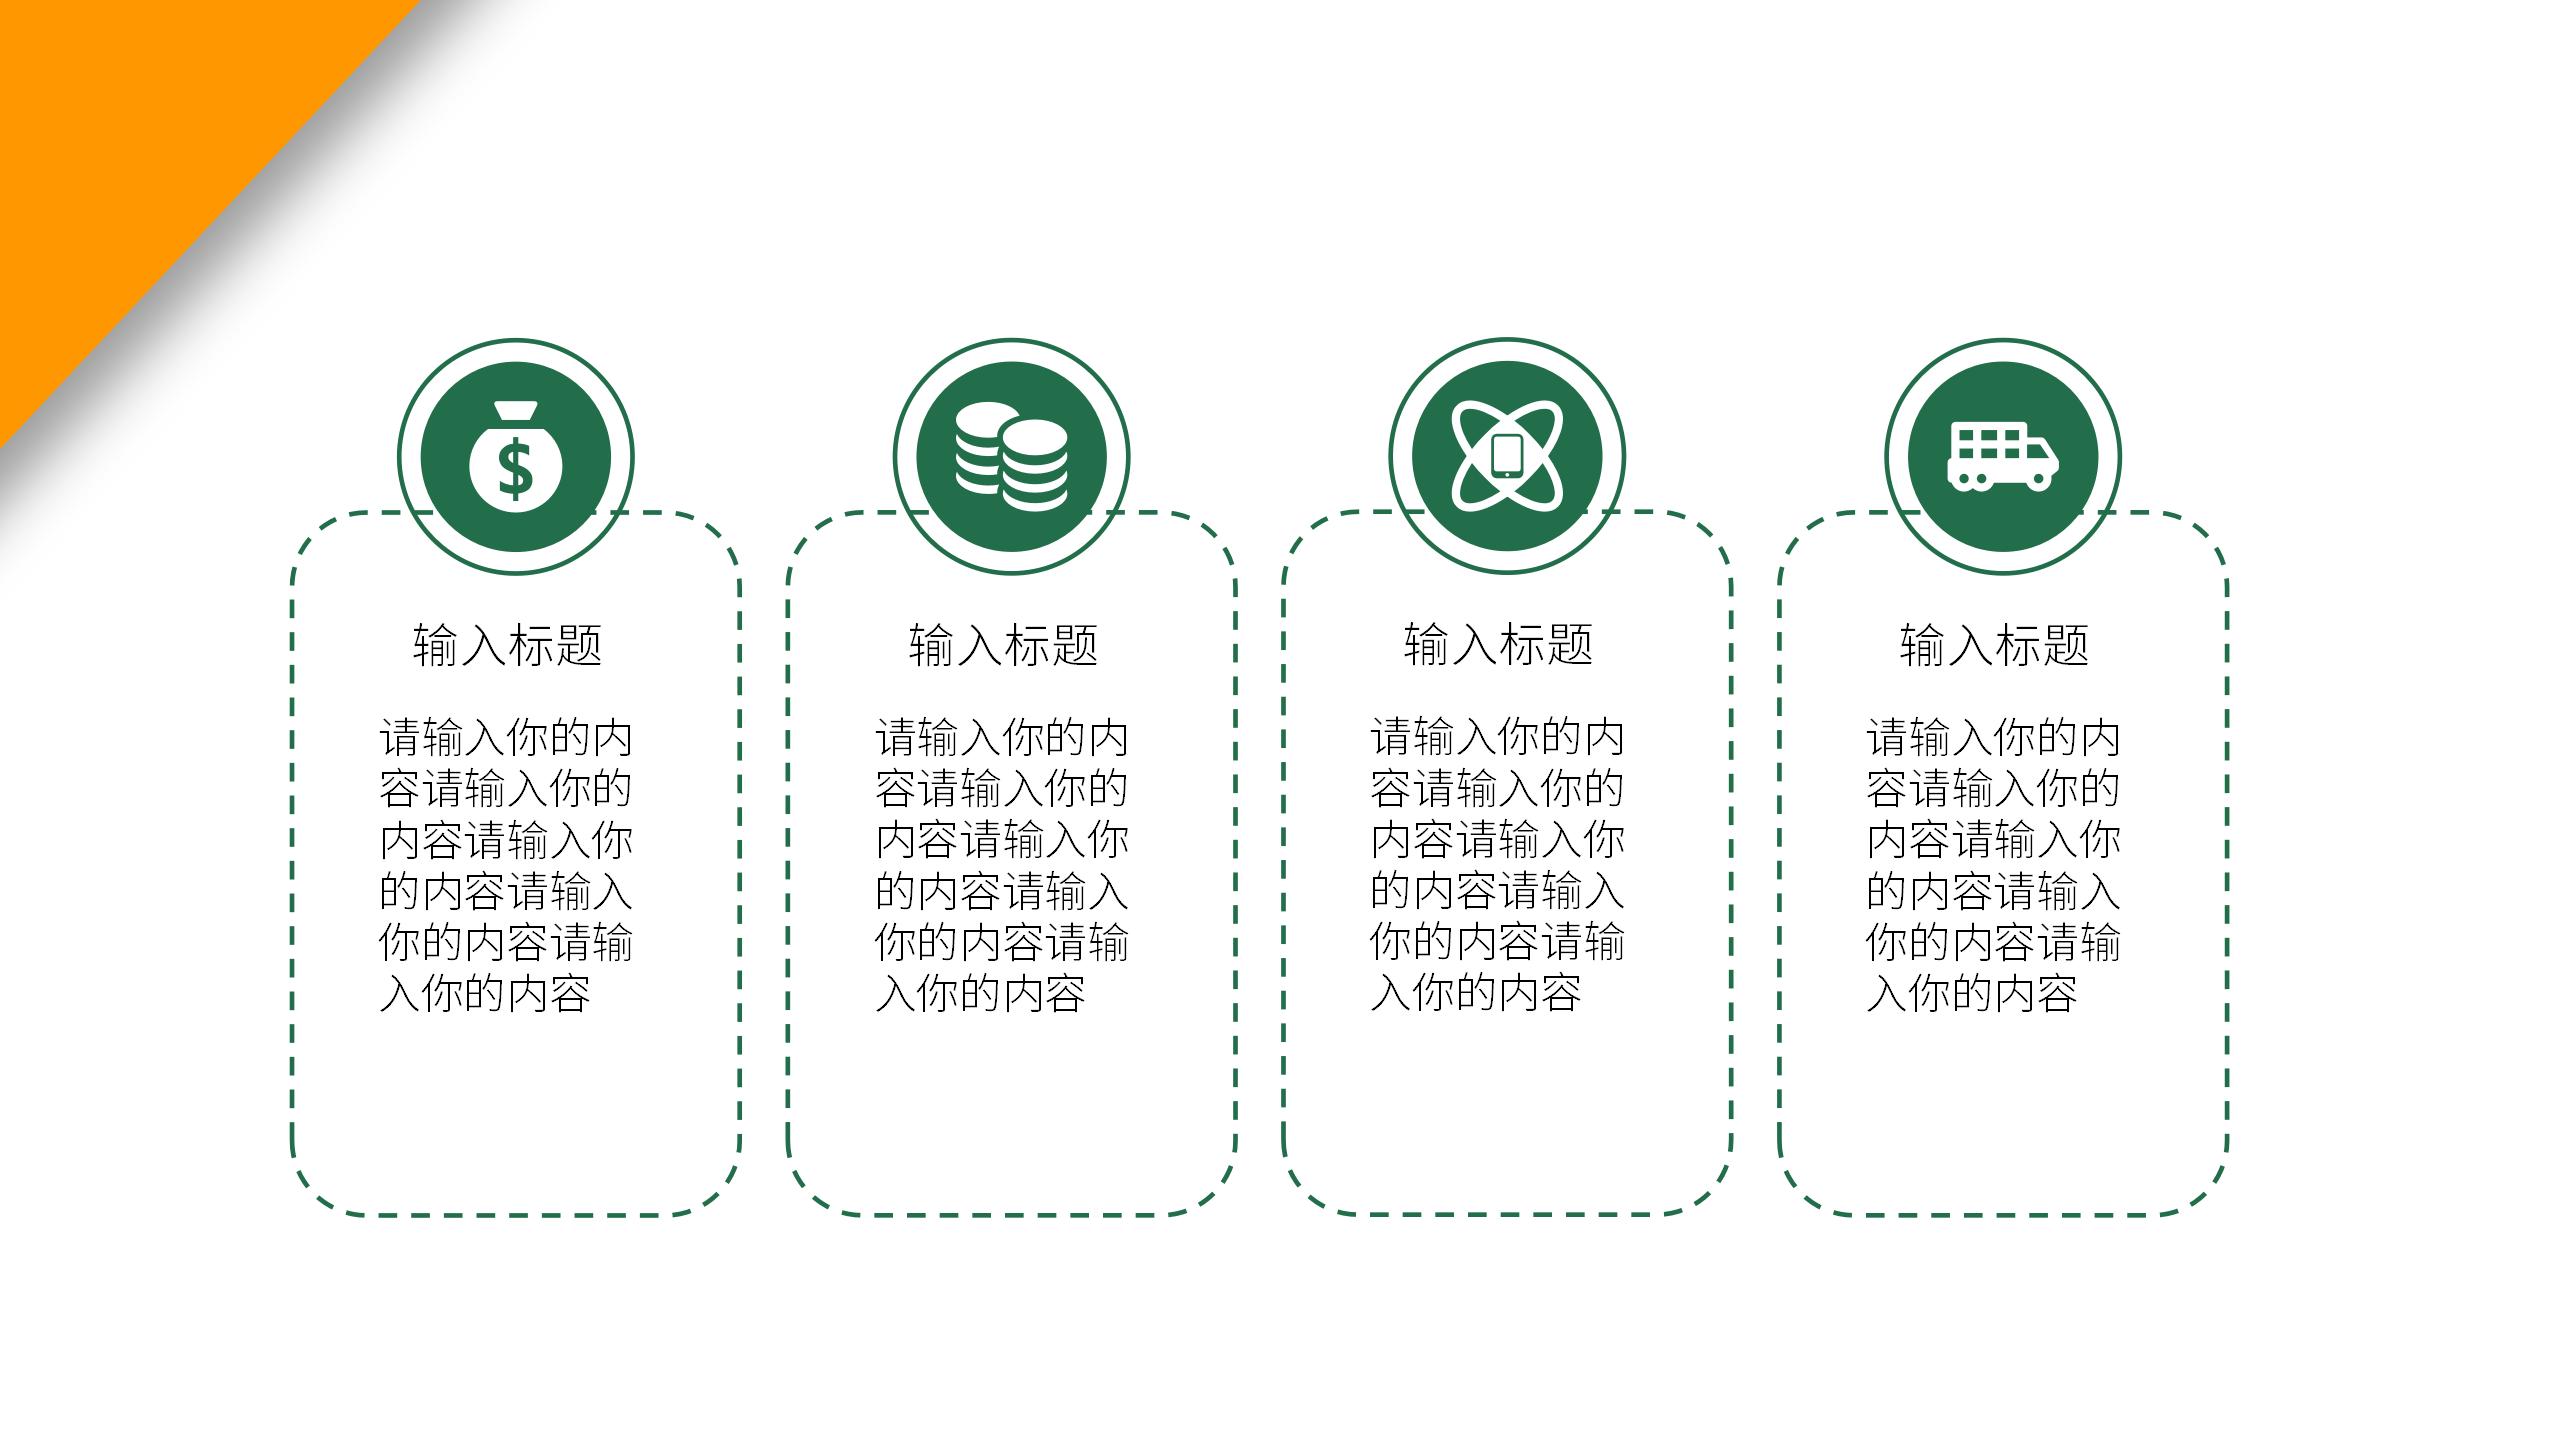 黄绿拼色简约餐饮品牌介绍财务分析报告产品推广PPT模板